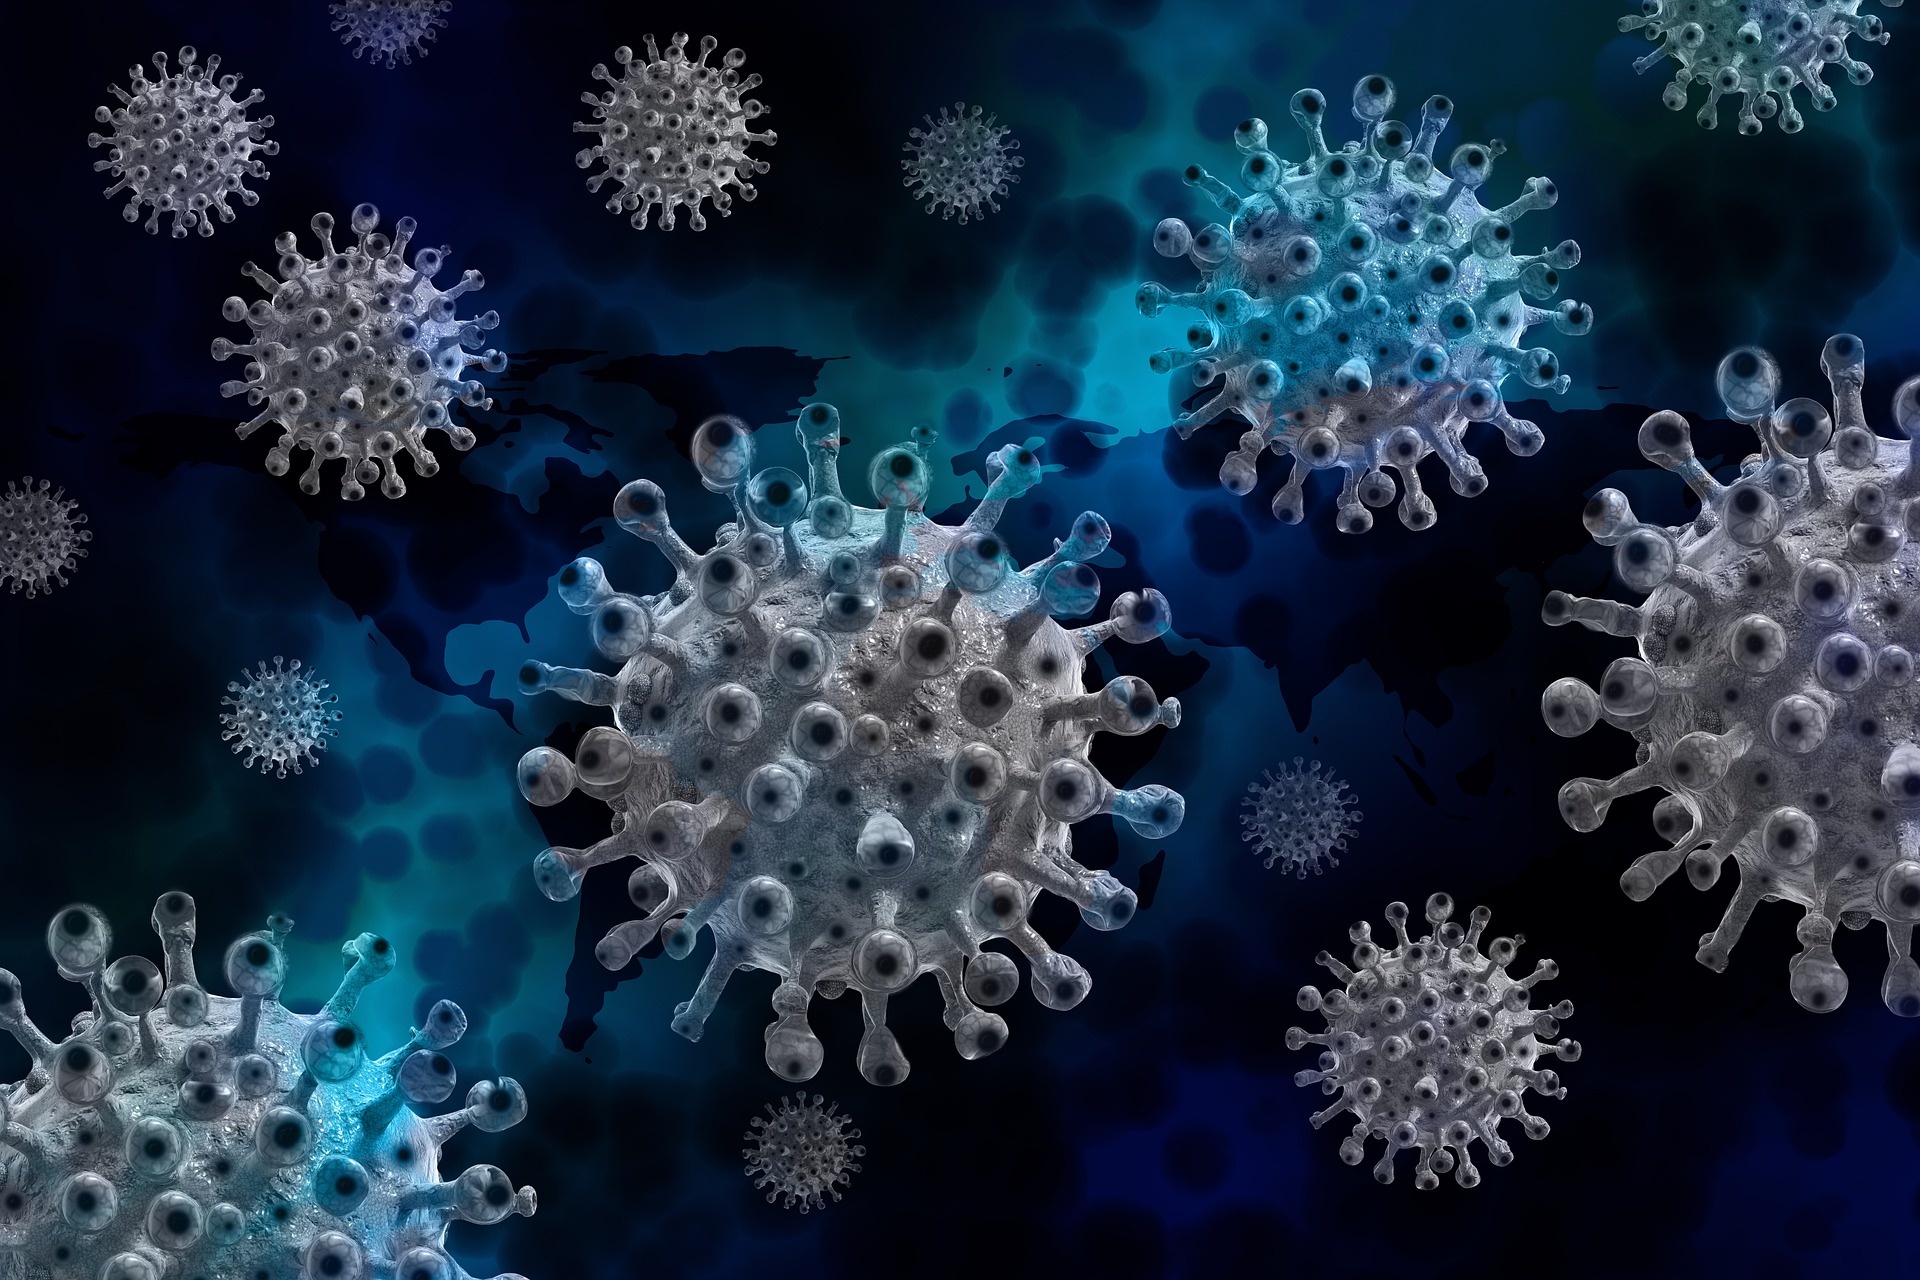 El virólogo Rafael Sanjuán reveló que los virus sí tienen comunicación entre sí. (Foto Prensa Libre: Pixabay)